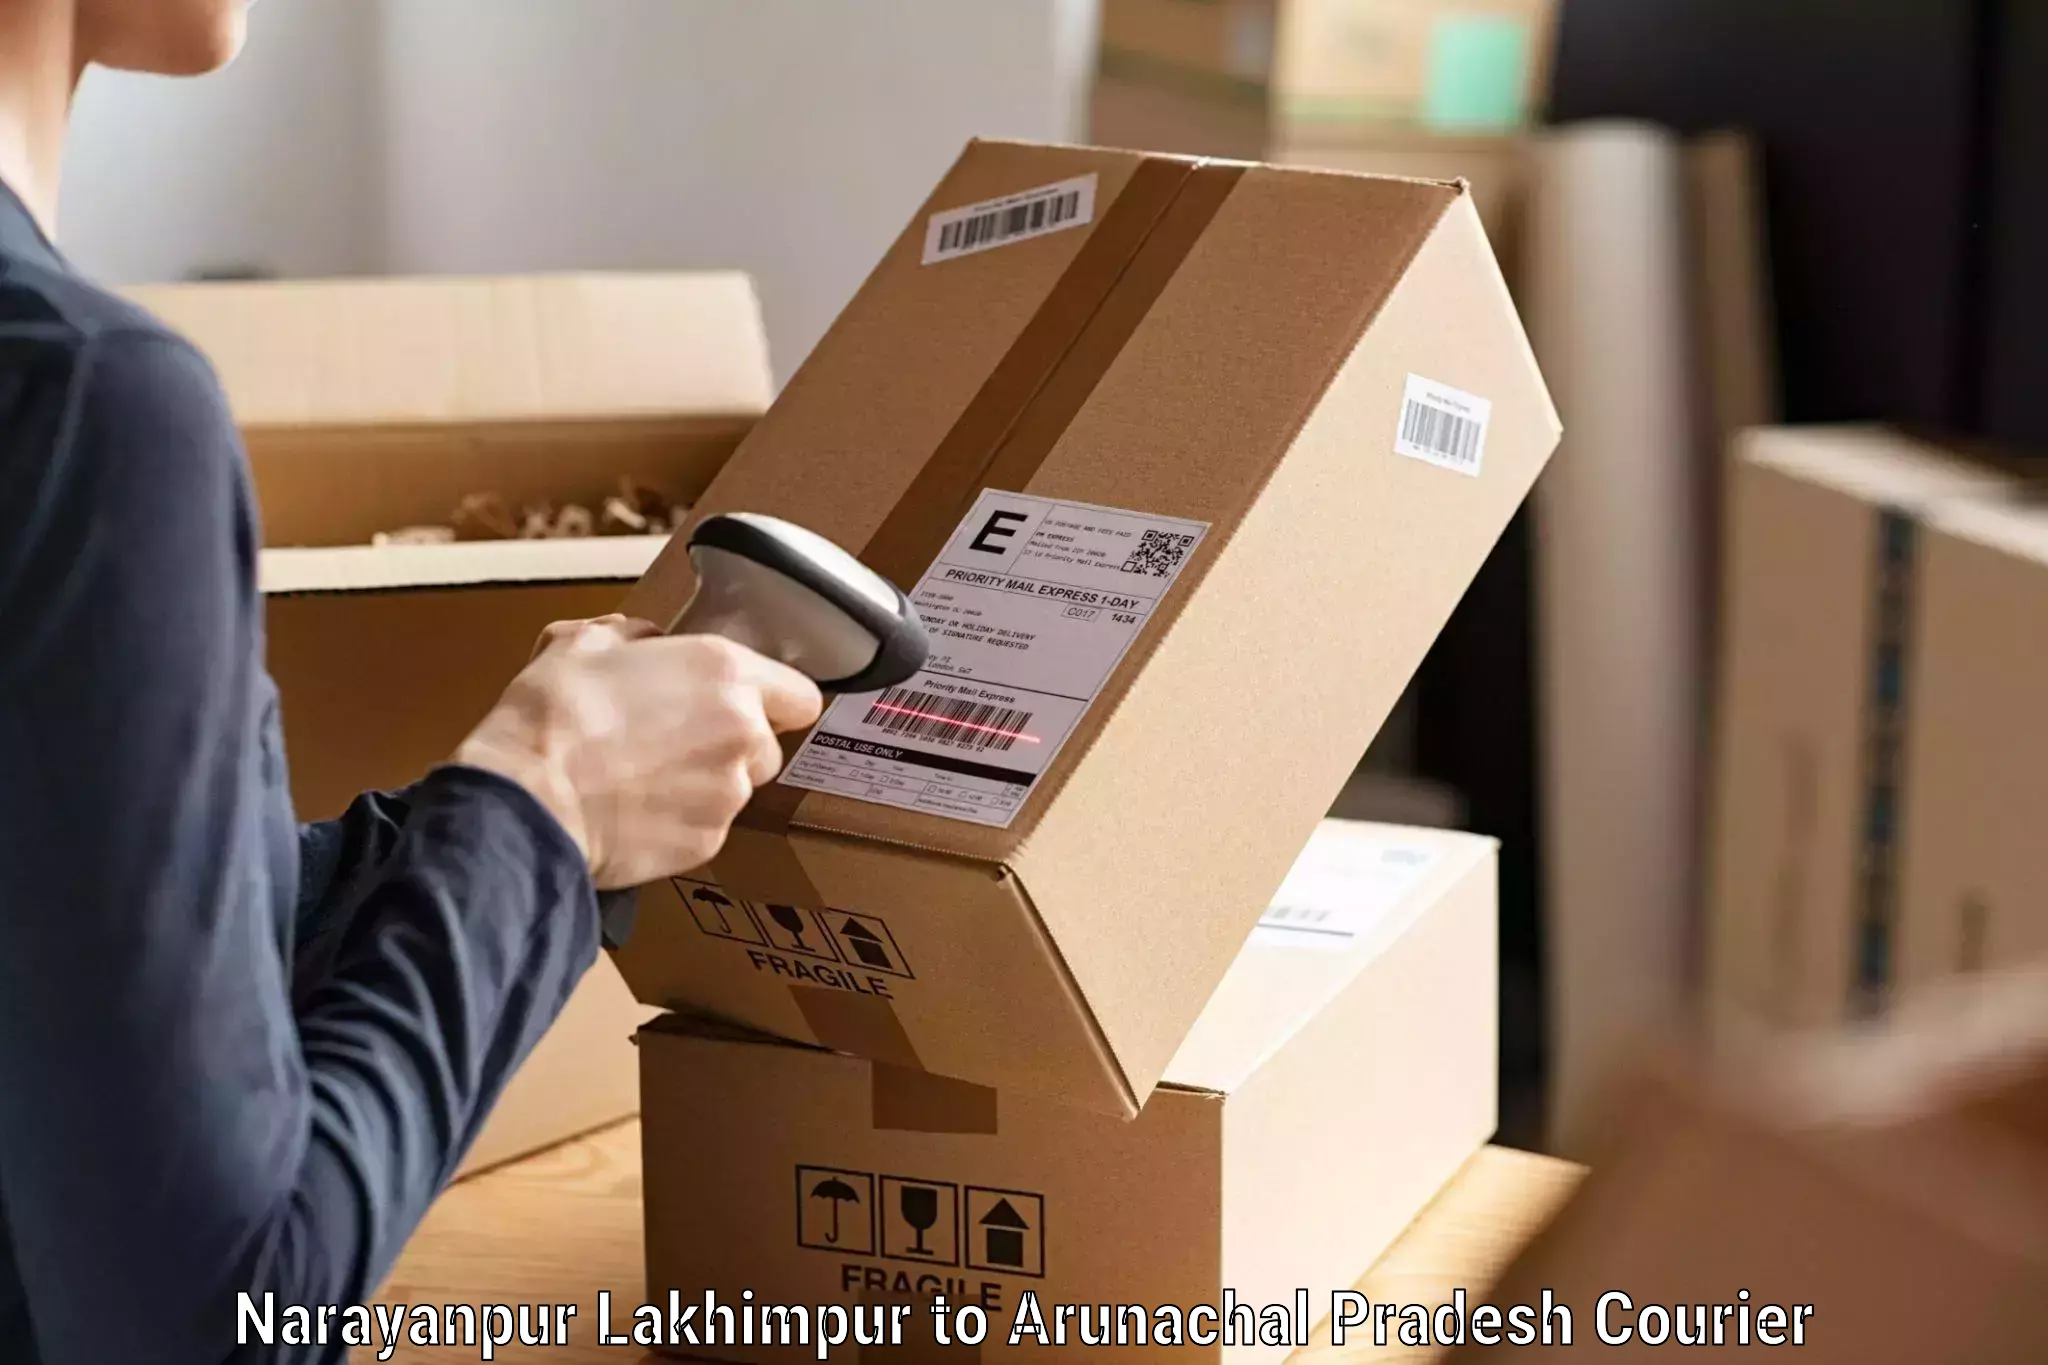 Professional courier handling Narayanpur Lakhimpur to Yazali